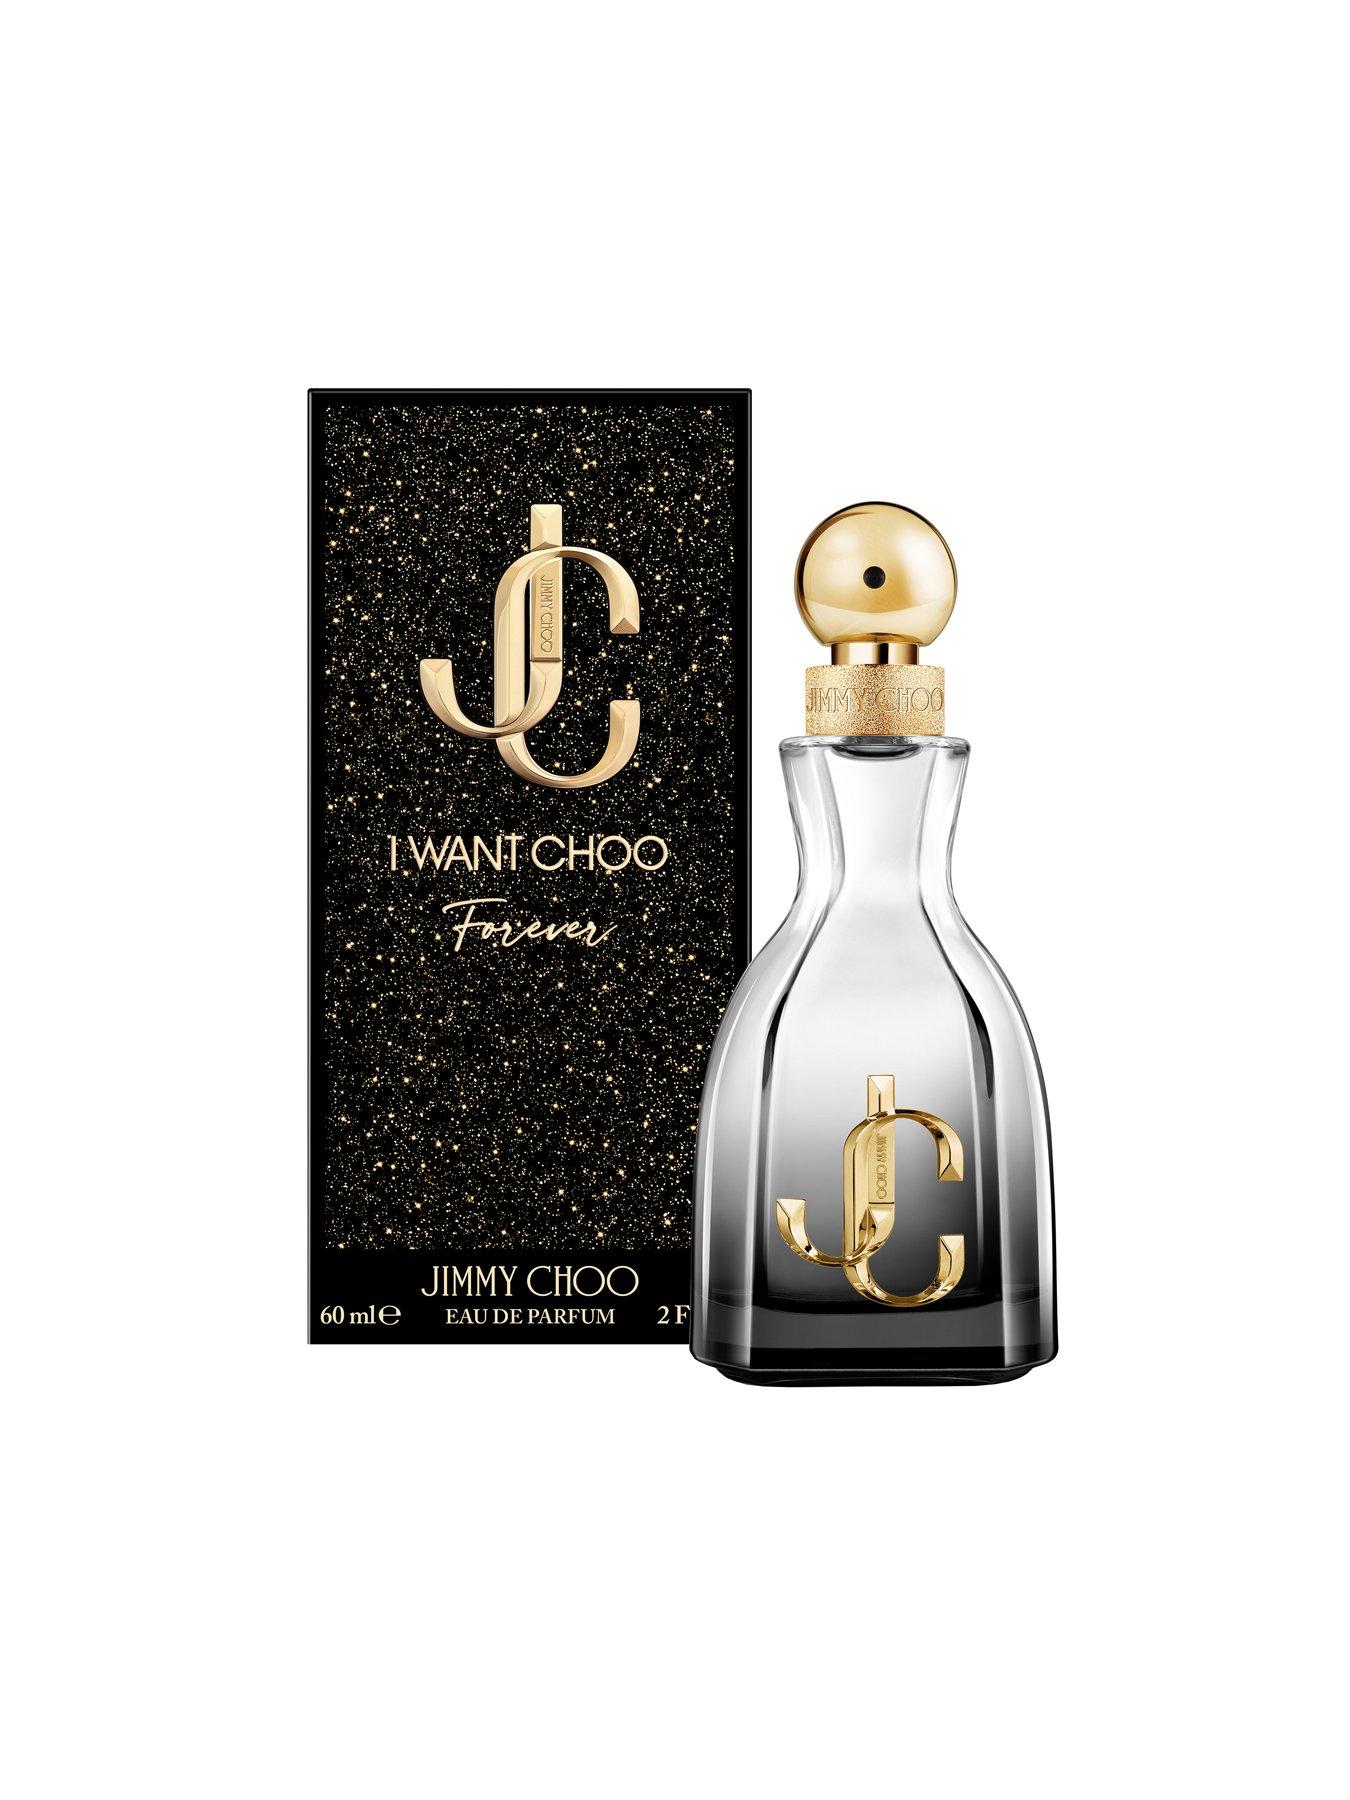 Jimmy Choo I Want Choo Forever 60ml Eau de Parfum | littlewoods.com